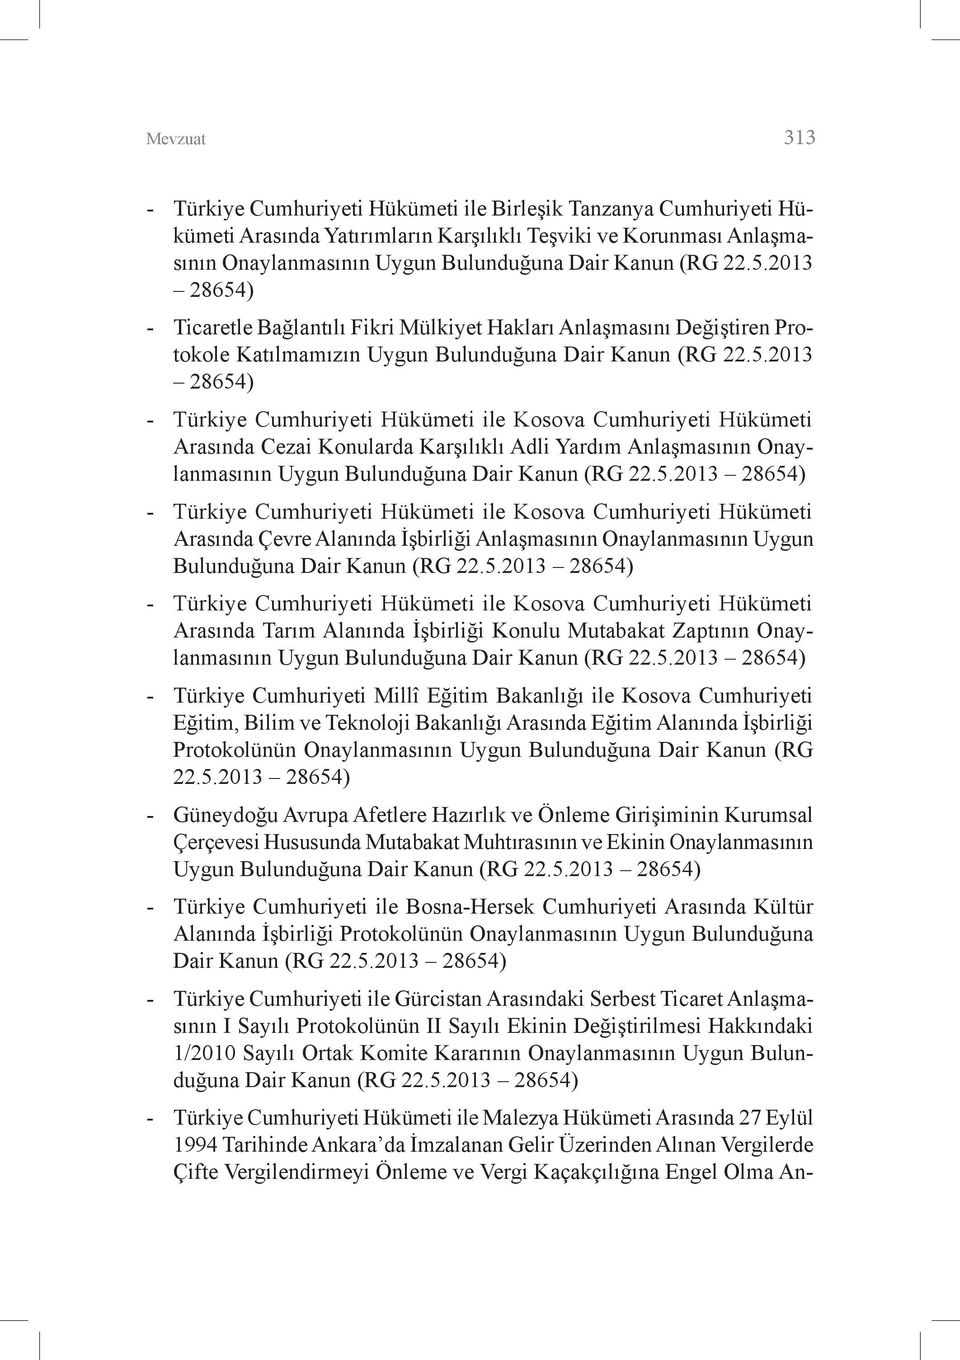 5.2013 28654) - Türkiye Cumhuriyeti Hükümeti ile Kosova Cumhuriyeti Hükümeti Arasında Çevre Alanında İşbirliği Anlaşmasının Onaylanmasının Uygun Bulunduğuna Dair Kanun (RG 22.5.2013 28654) - Türkiye Cumhuriyeti Hükümeti ile Kosova Cumhuriyeti Hükümeti Arasında Tarım Alanında İşbirliği Konulu Mutabakat Zaptının Onaylanmasının Uygun Bulunduğuna Dair Kanun (RG 22.